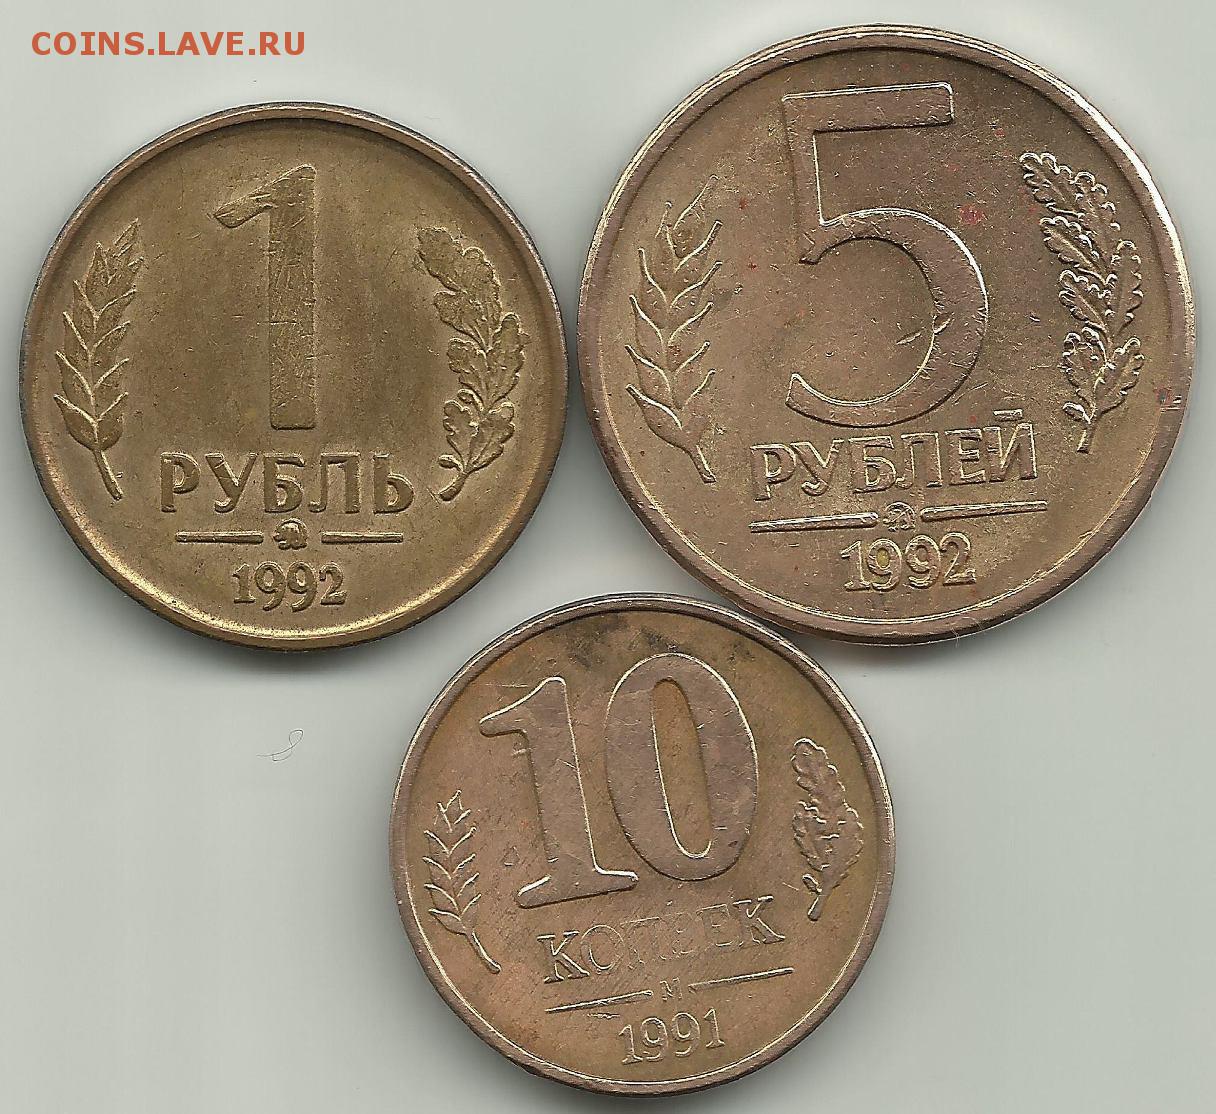 5 рублей бонус. 1 Руб 1992 ММД. 5 Рублей 1992 ММД. Монета 5 рублей 1992 ММД. 1 Рубль 1992 м.